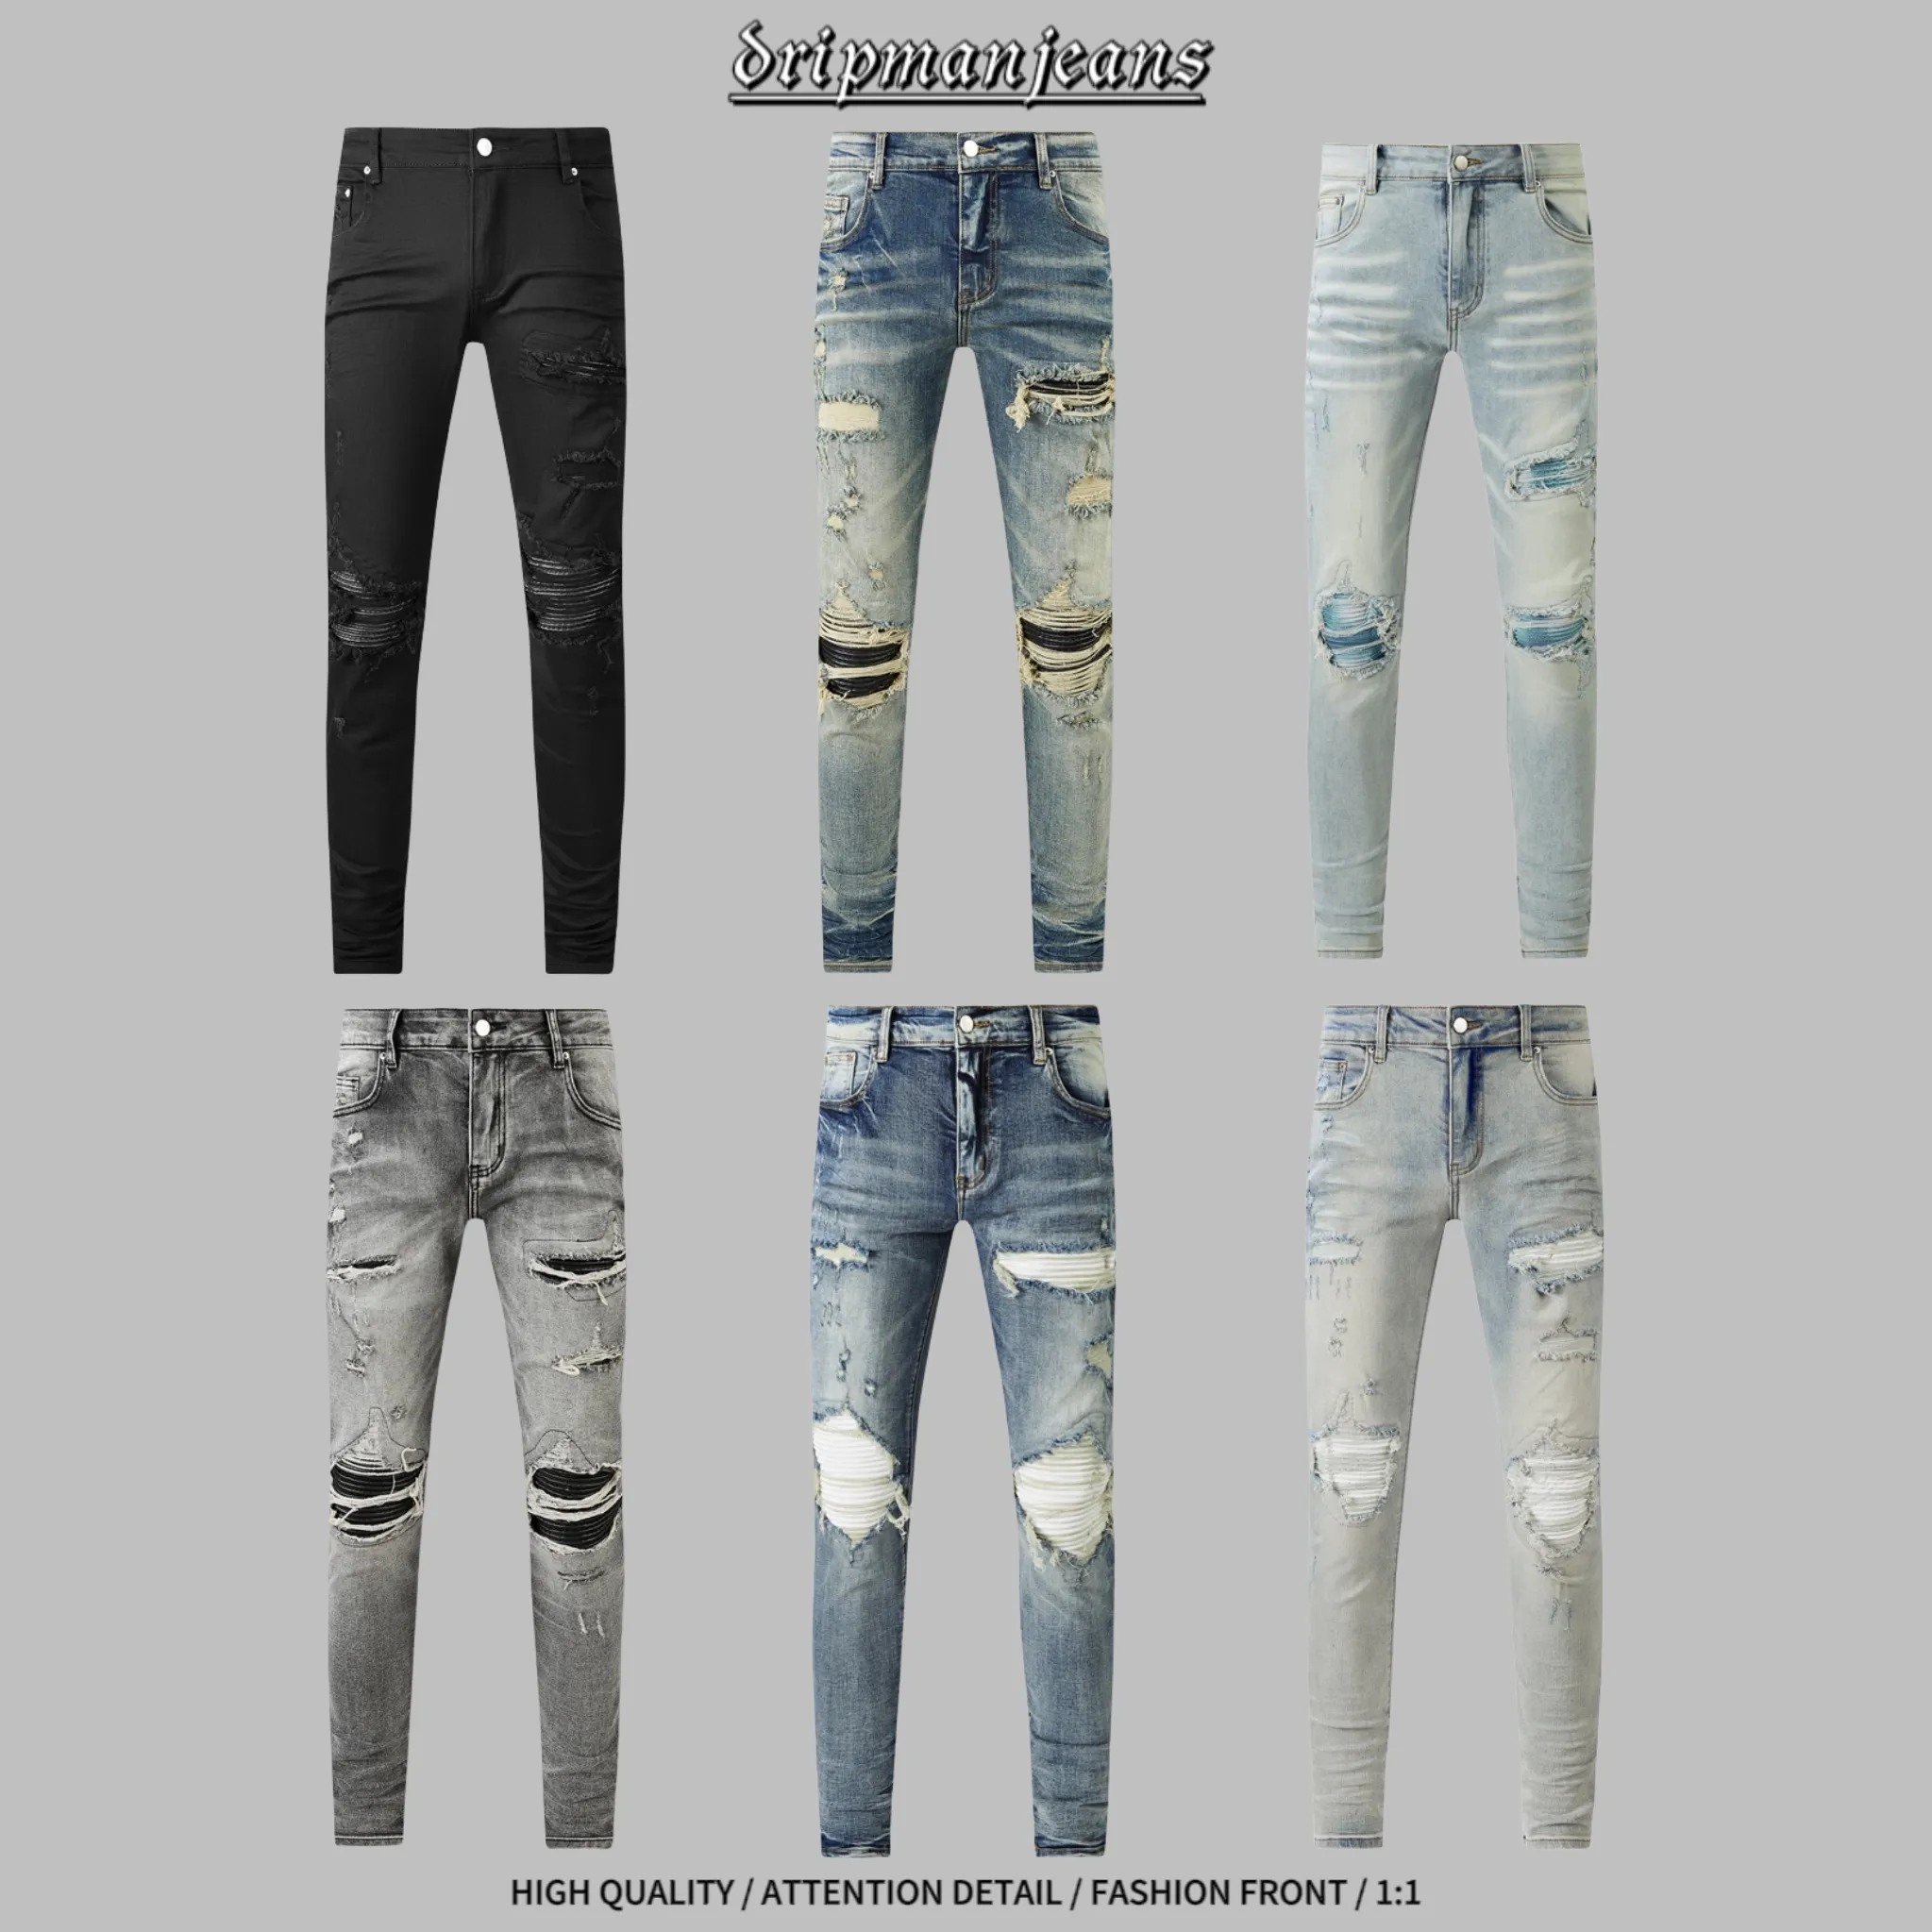 är jeans designer jeans uadrip jeans mäns smala jeans högkvalitativa jeans hiphop jeans mager jeans byxor mode denim byxor